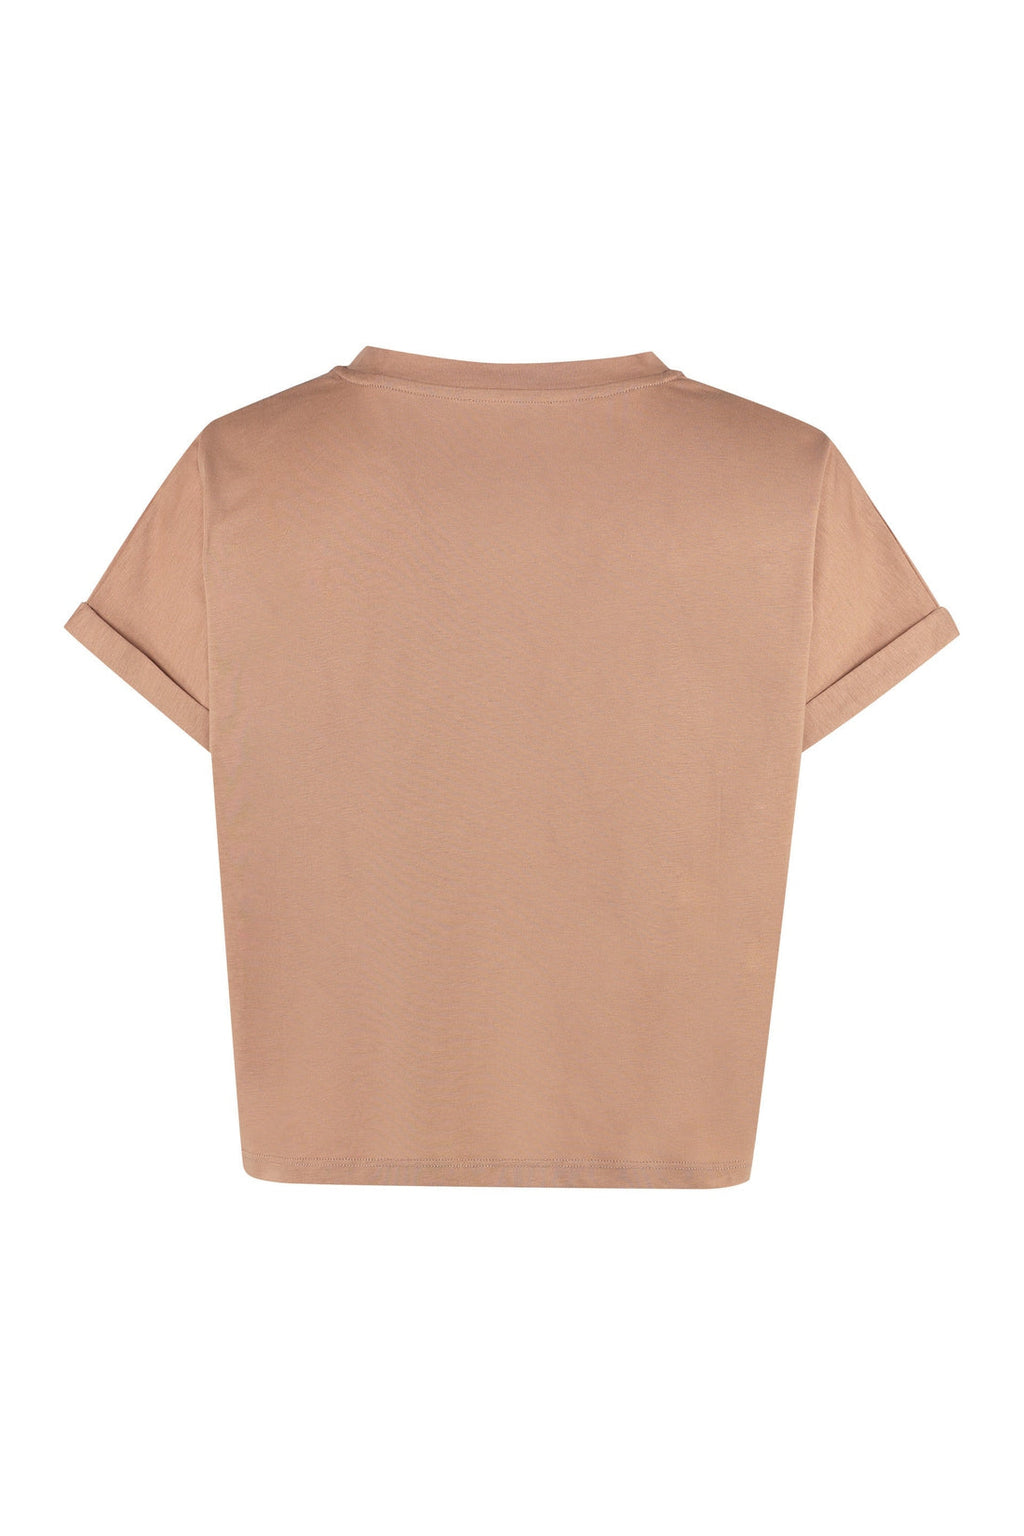 Balmain-OUTLET-SALE-Logo cotton t-shirt-ARCHIVIST